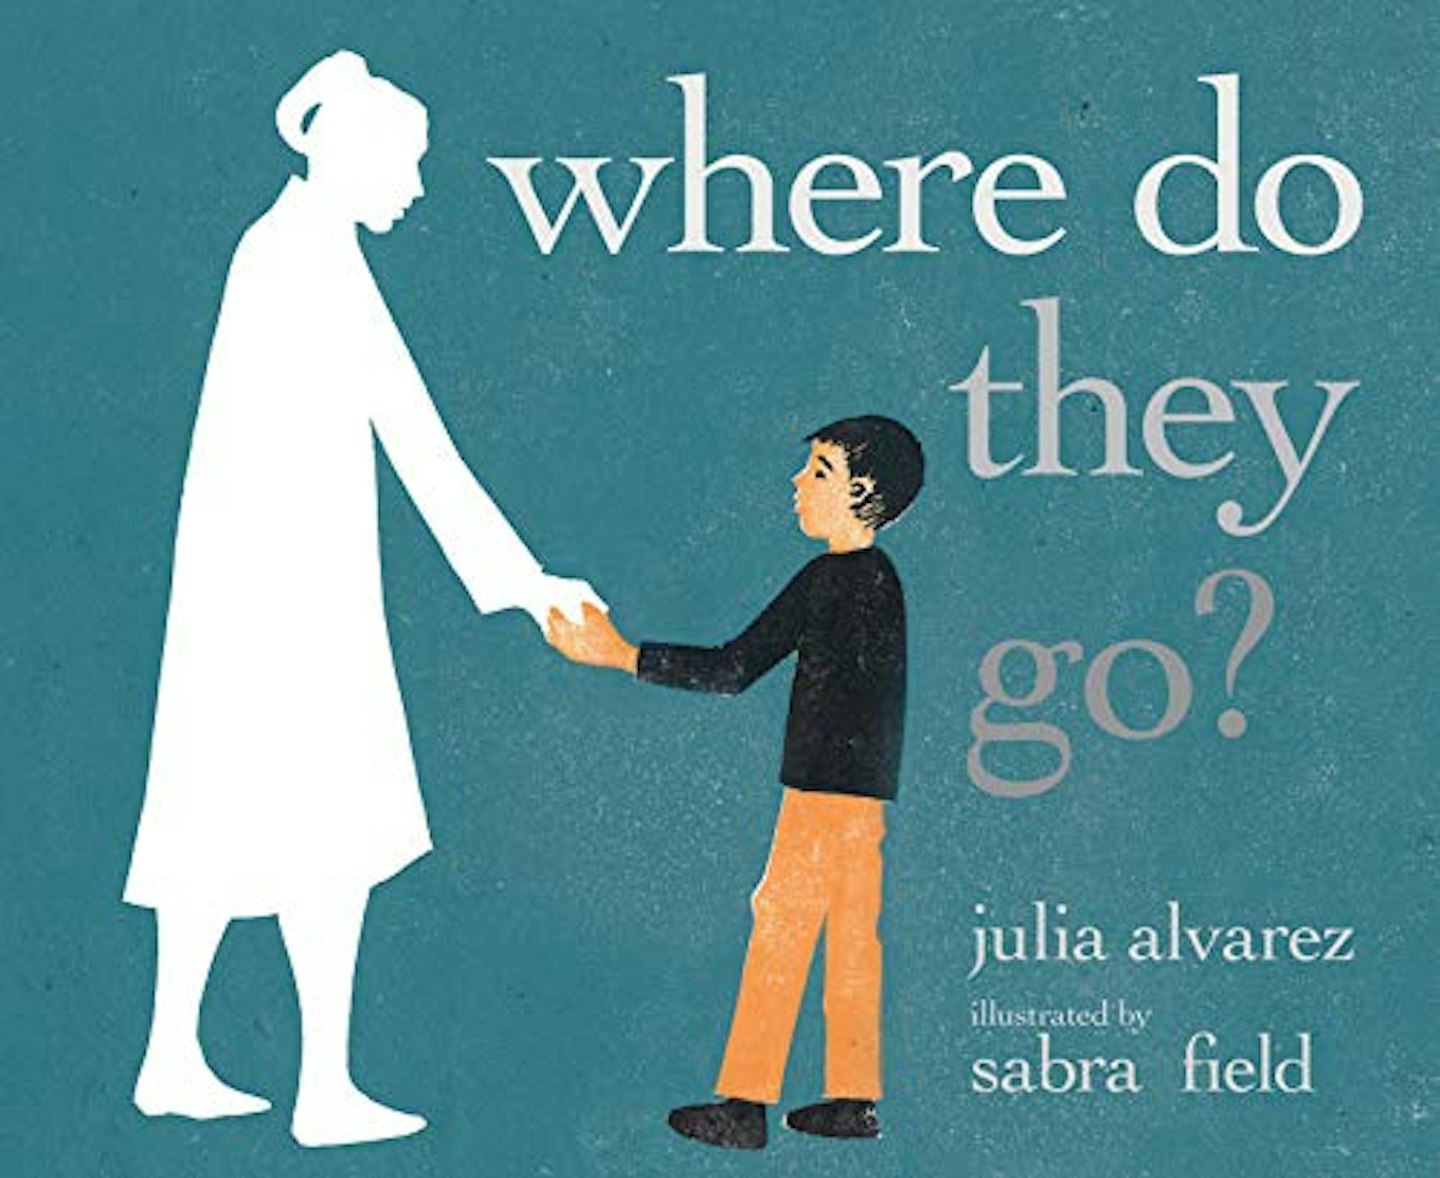  Where Do They Go? by Julia Alvarez and Sabra Field